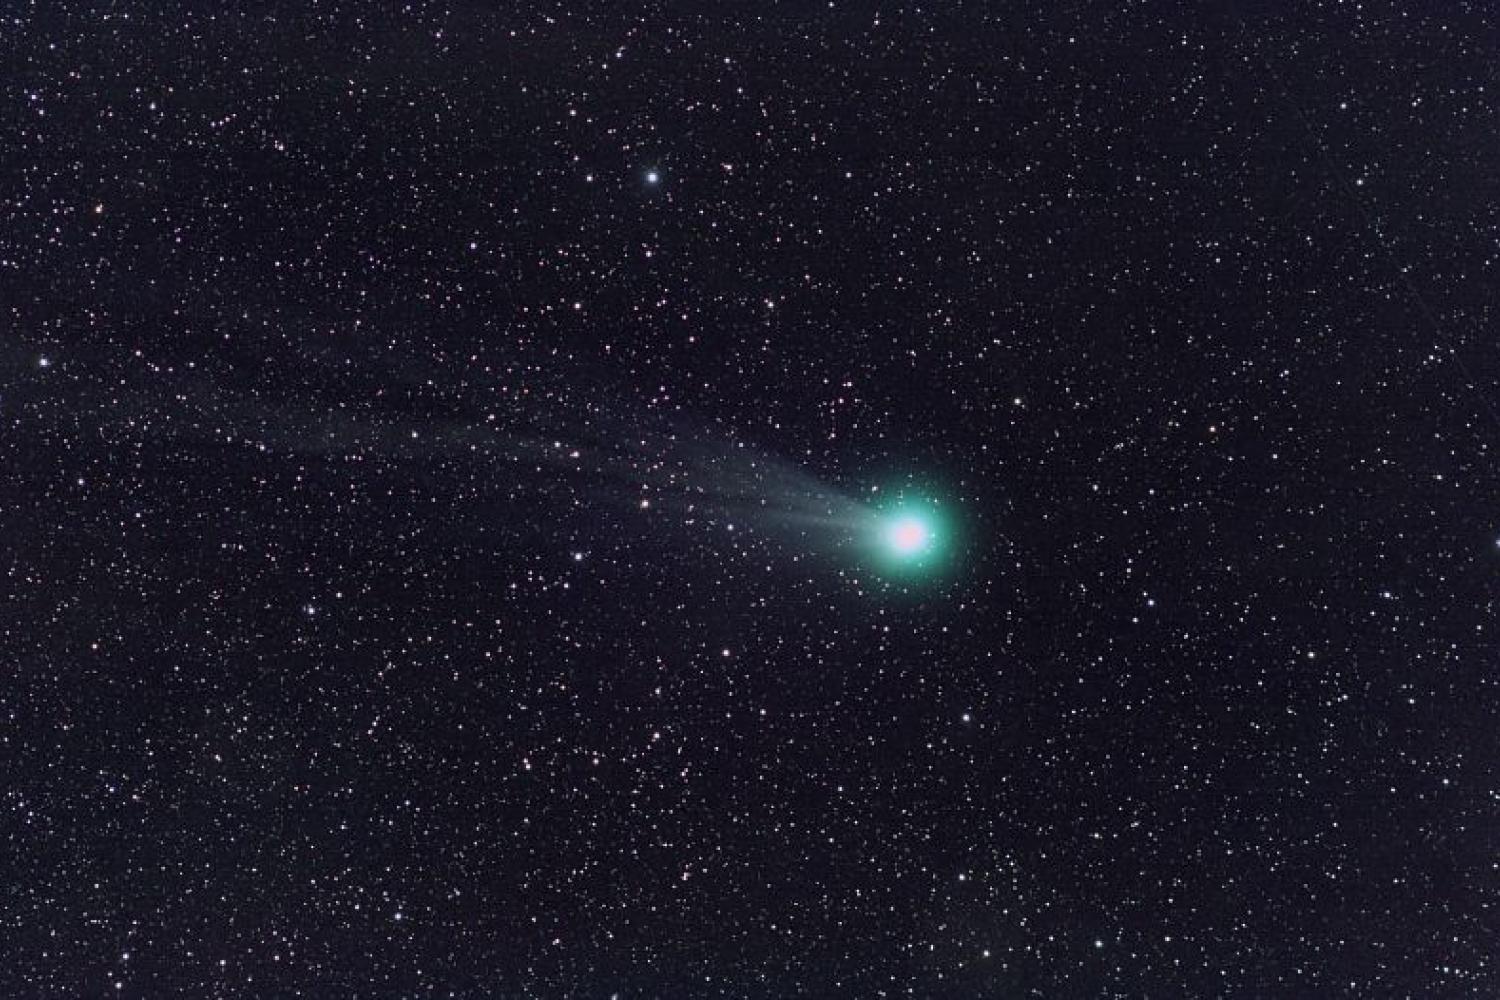 comete_lovejoy_observee_le_13_janvier_2015_c_bruno_daversin.jpg